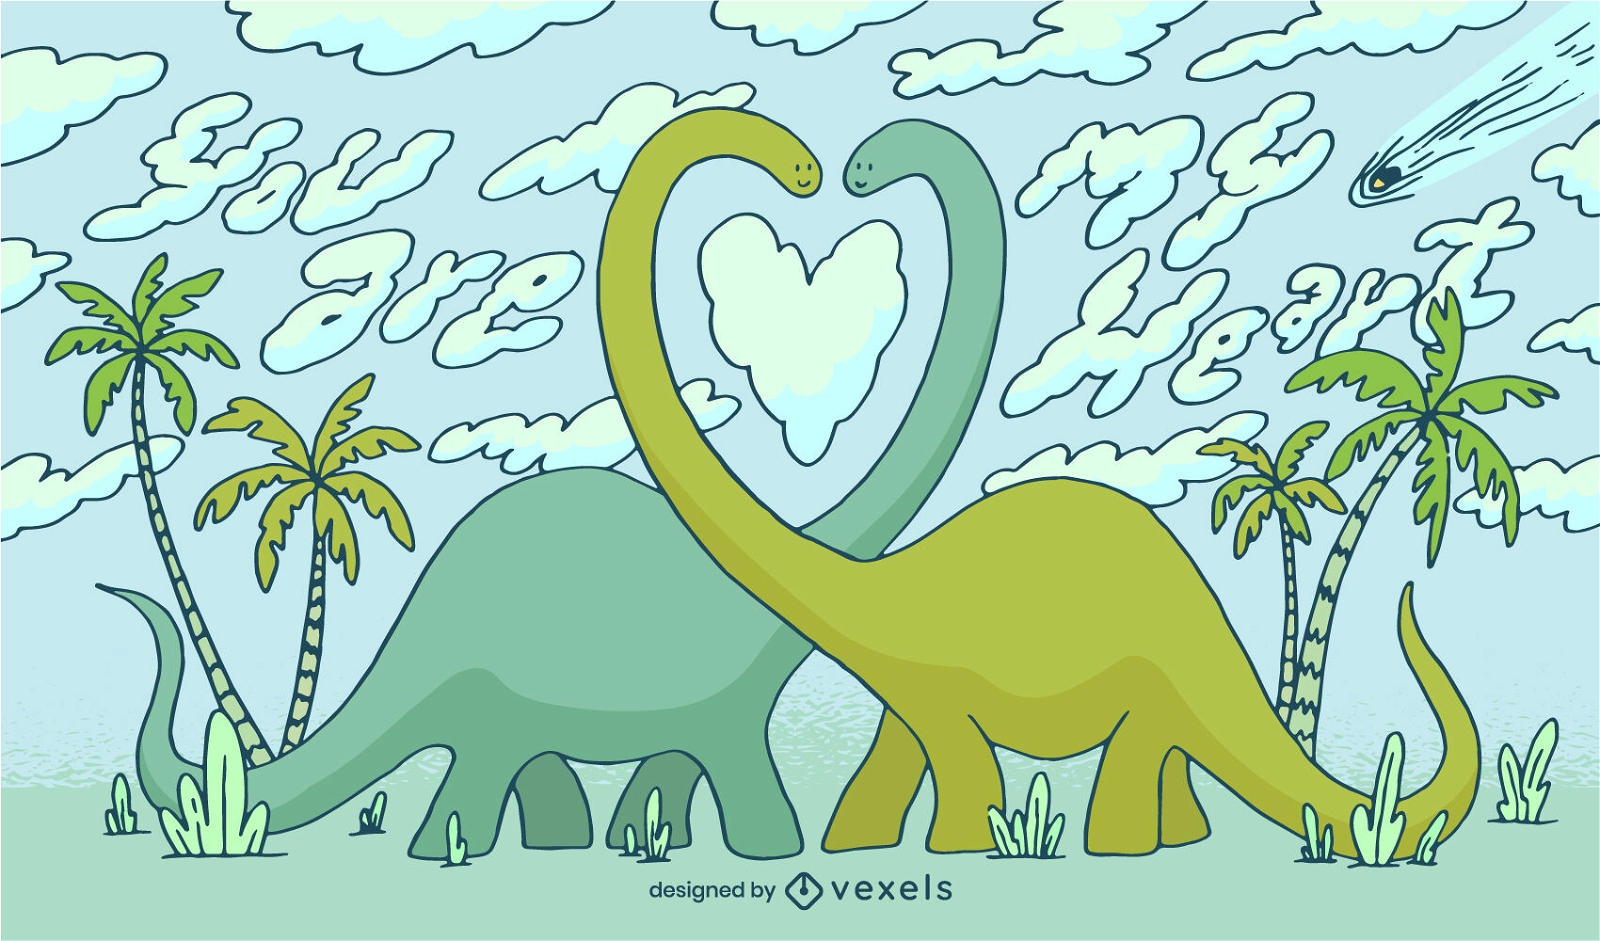 Dinosaurios enamorados ilustraci?n del d?a de san valent?n